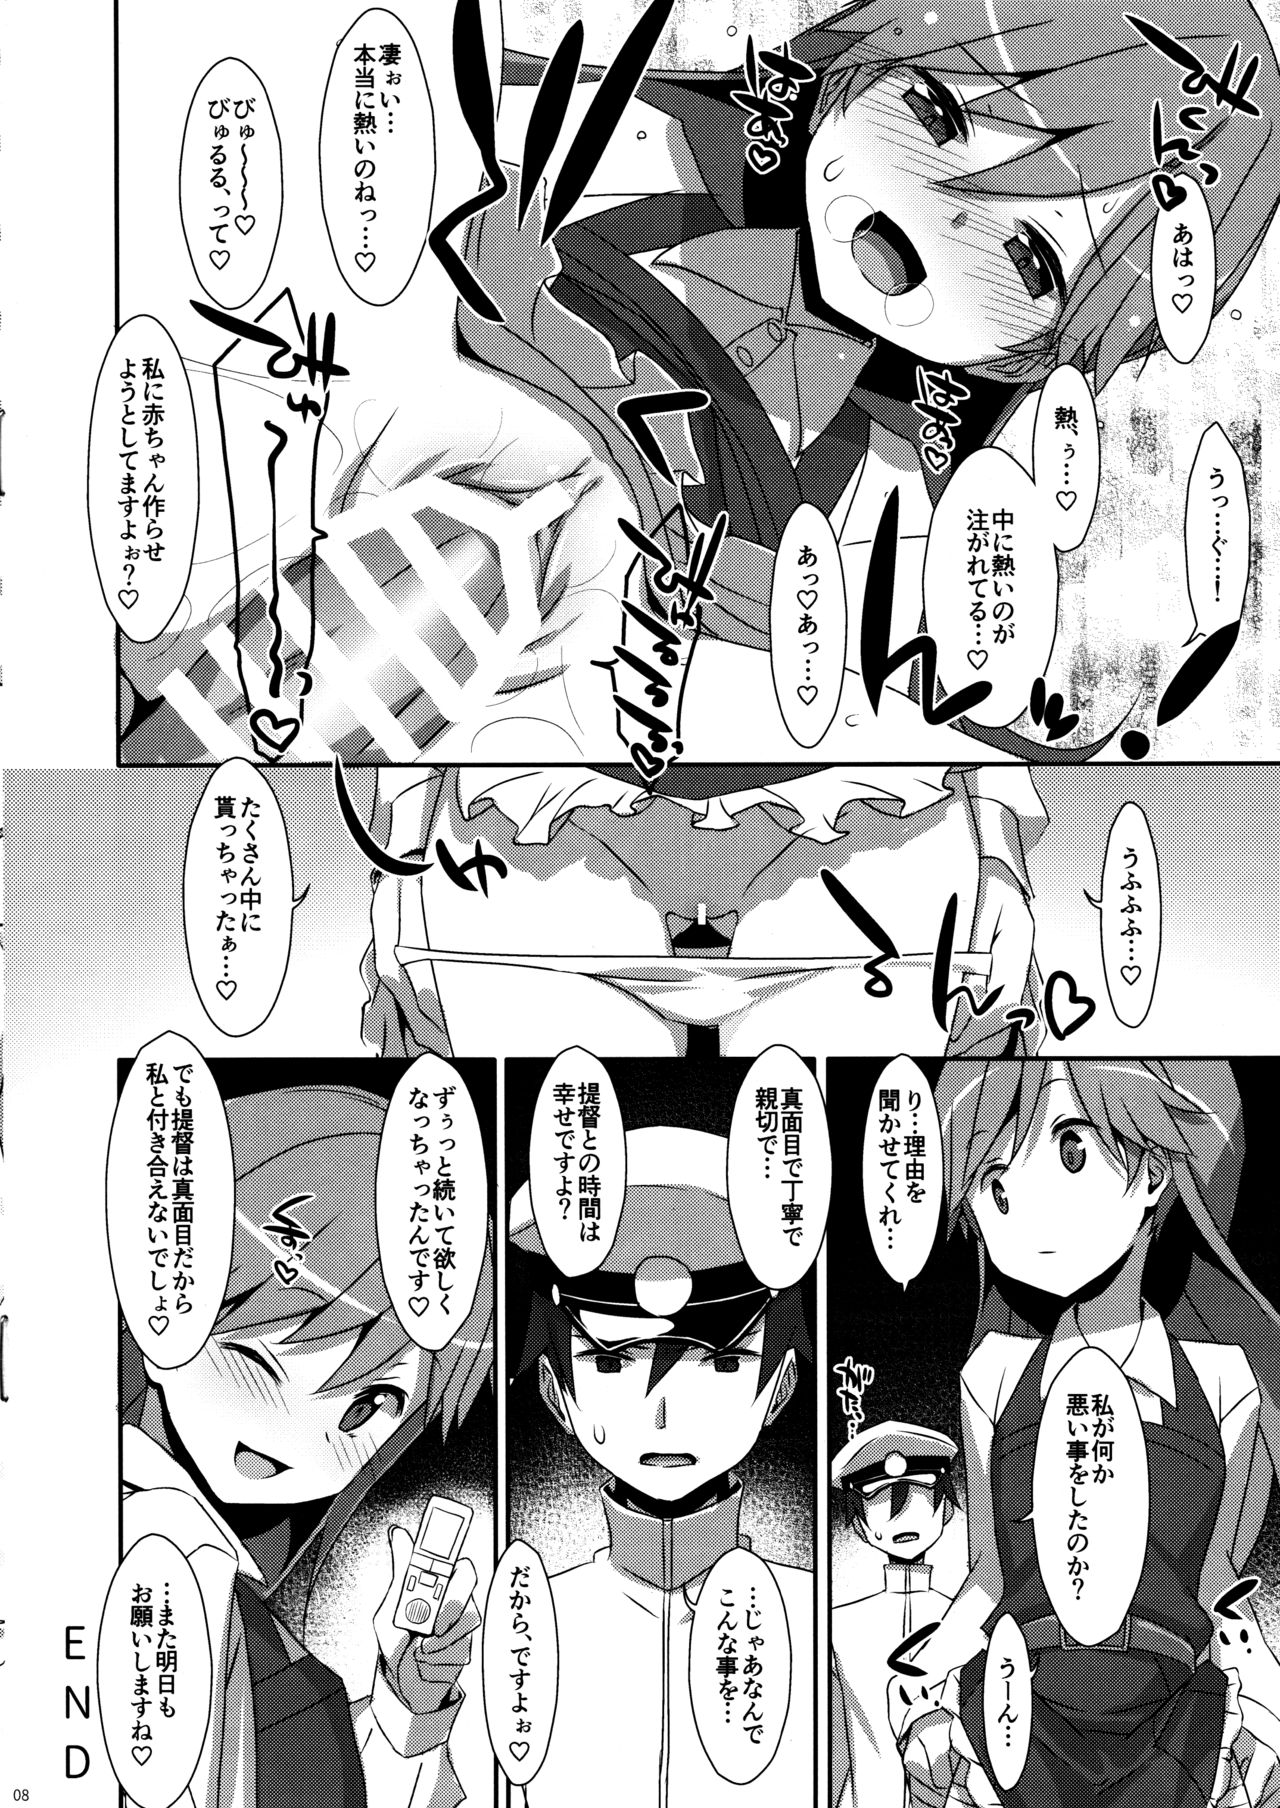 (COMIC1☆11) [TIES (タケイオーキ)] Admiral Is Mine (艦隊これくしょん -艦これ-)